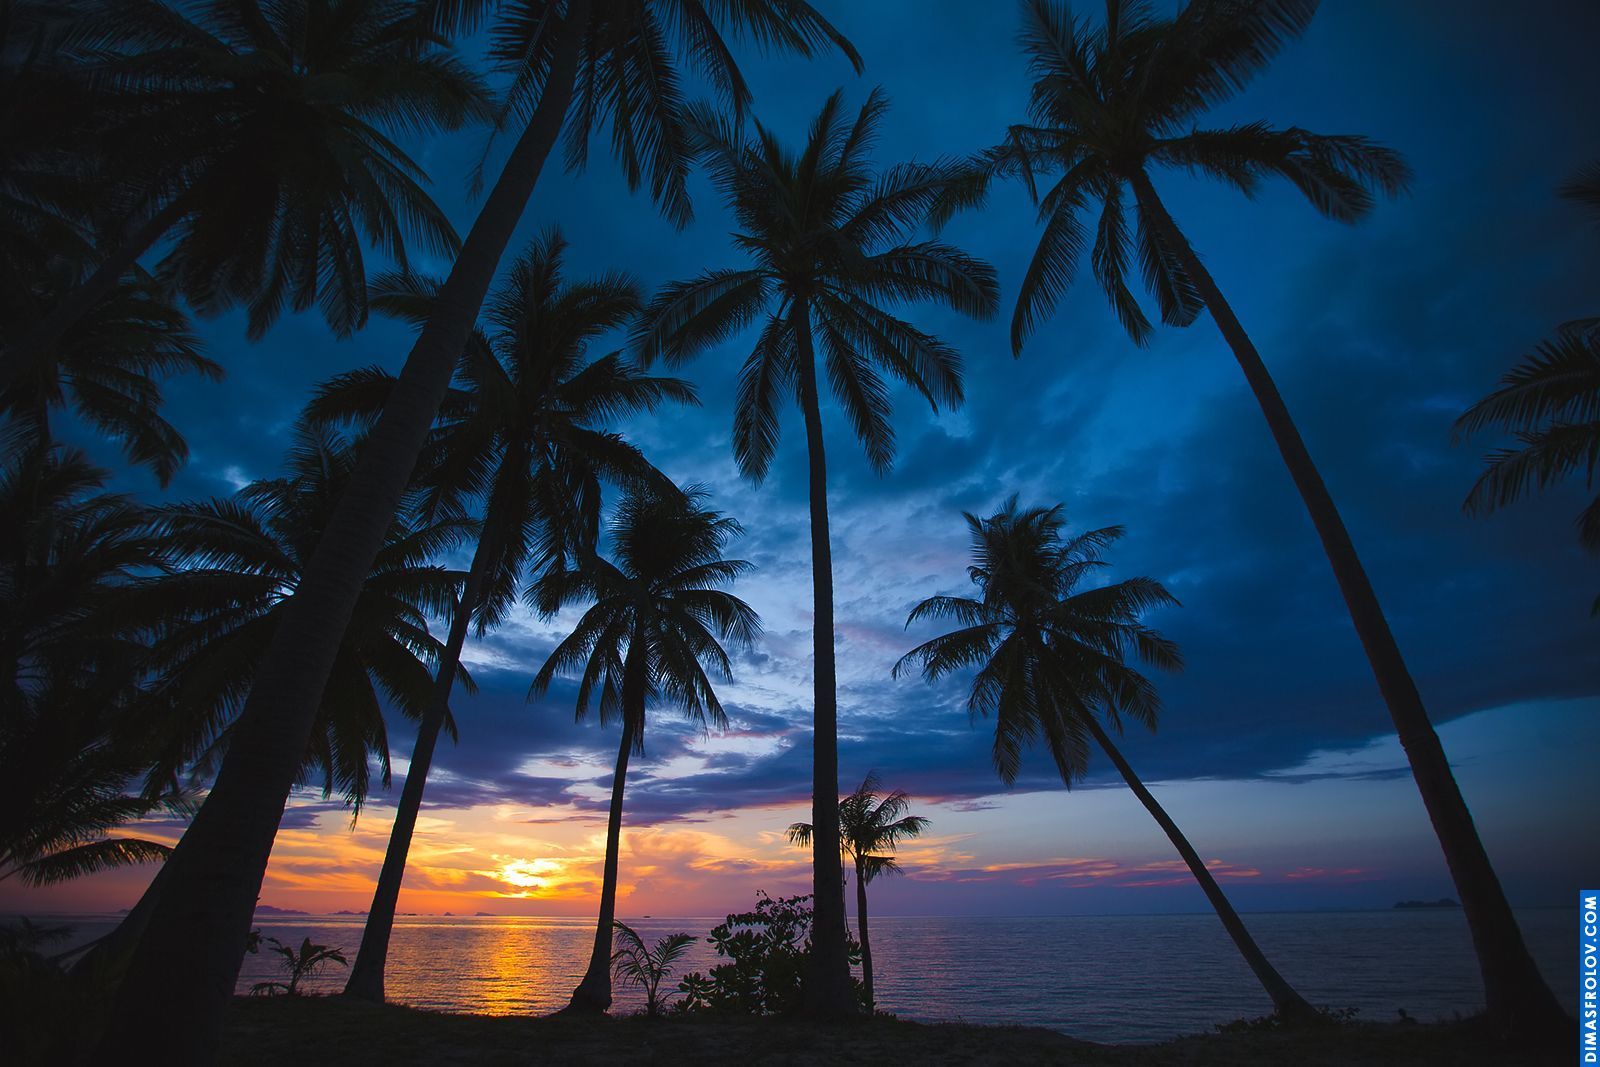 Koh Samui Landscapes photography. Photo Sunset_coconut02da1e3946. Dimas Frolov. Koh Samui Photographer. DimasFrolov.com